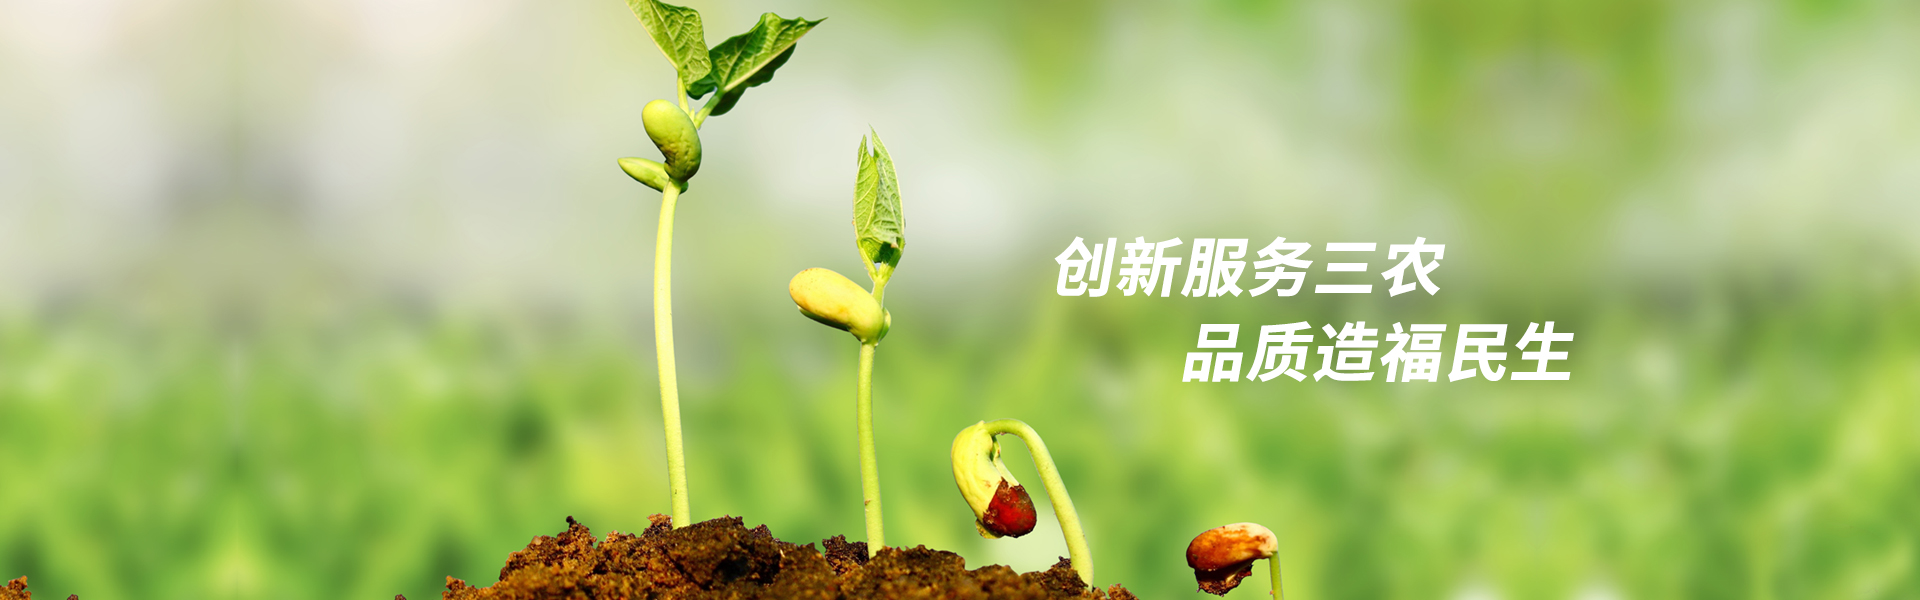 四川省种子协会